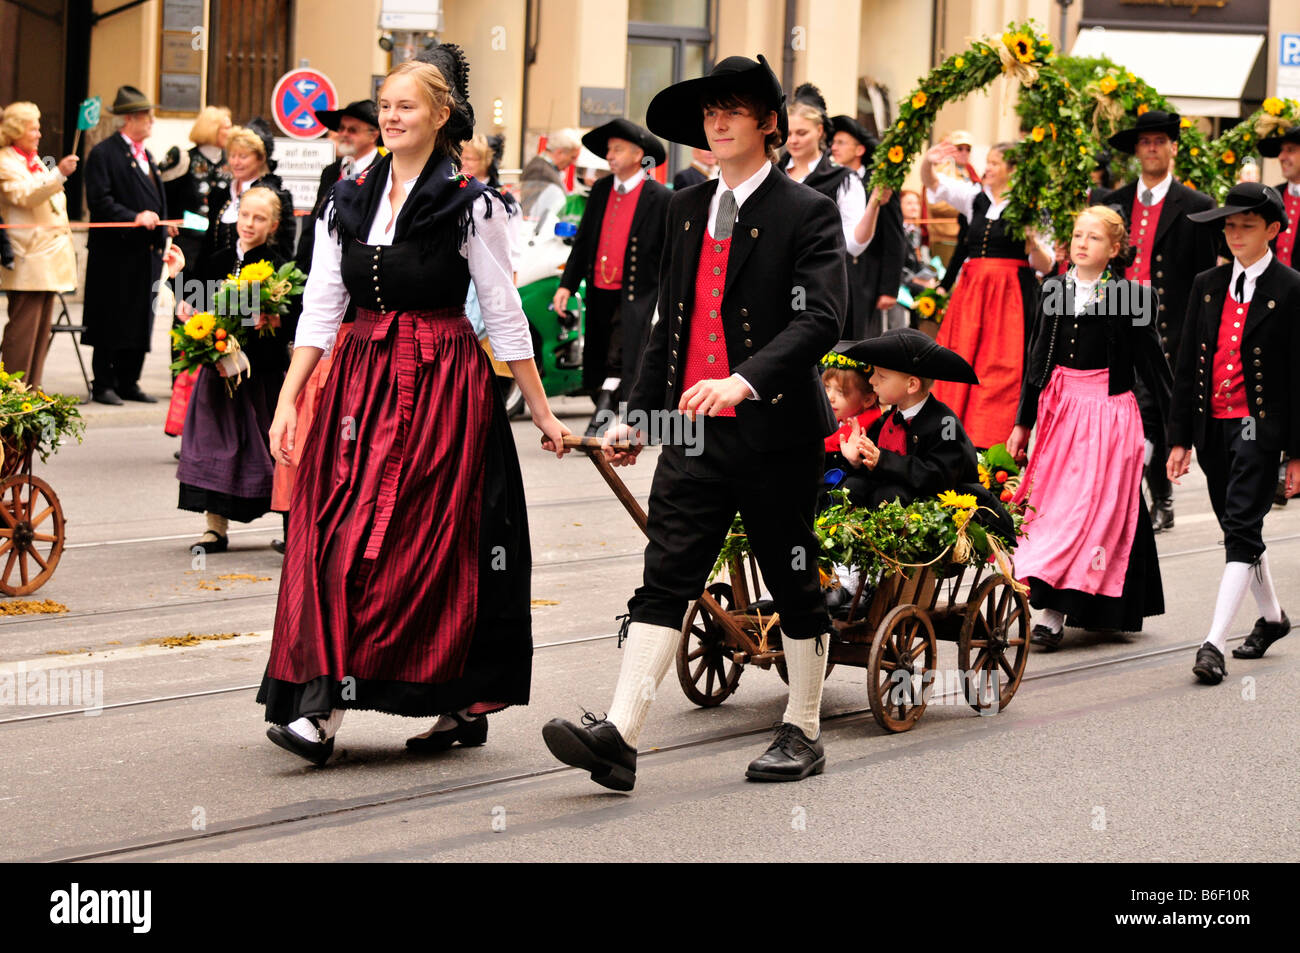 Le port de costumes traditionnels du groupe lors de la traditionnelle parade de costumes à l'Oktoberfest, Munich, Bavaria, Germany, Europe Banque D'Images